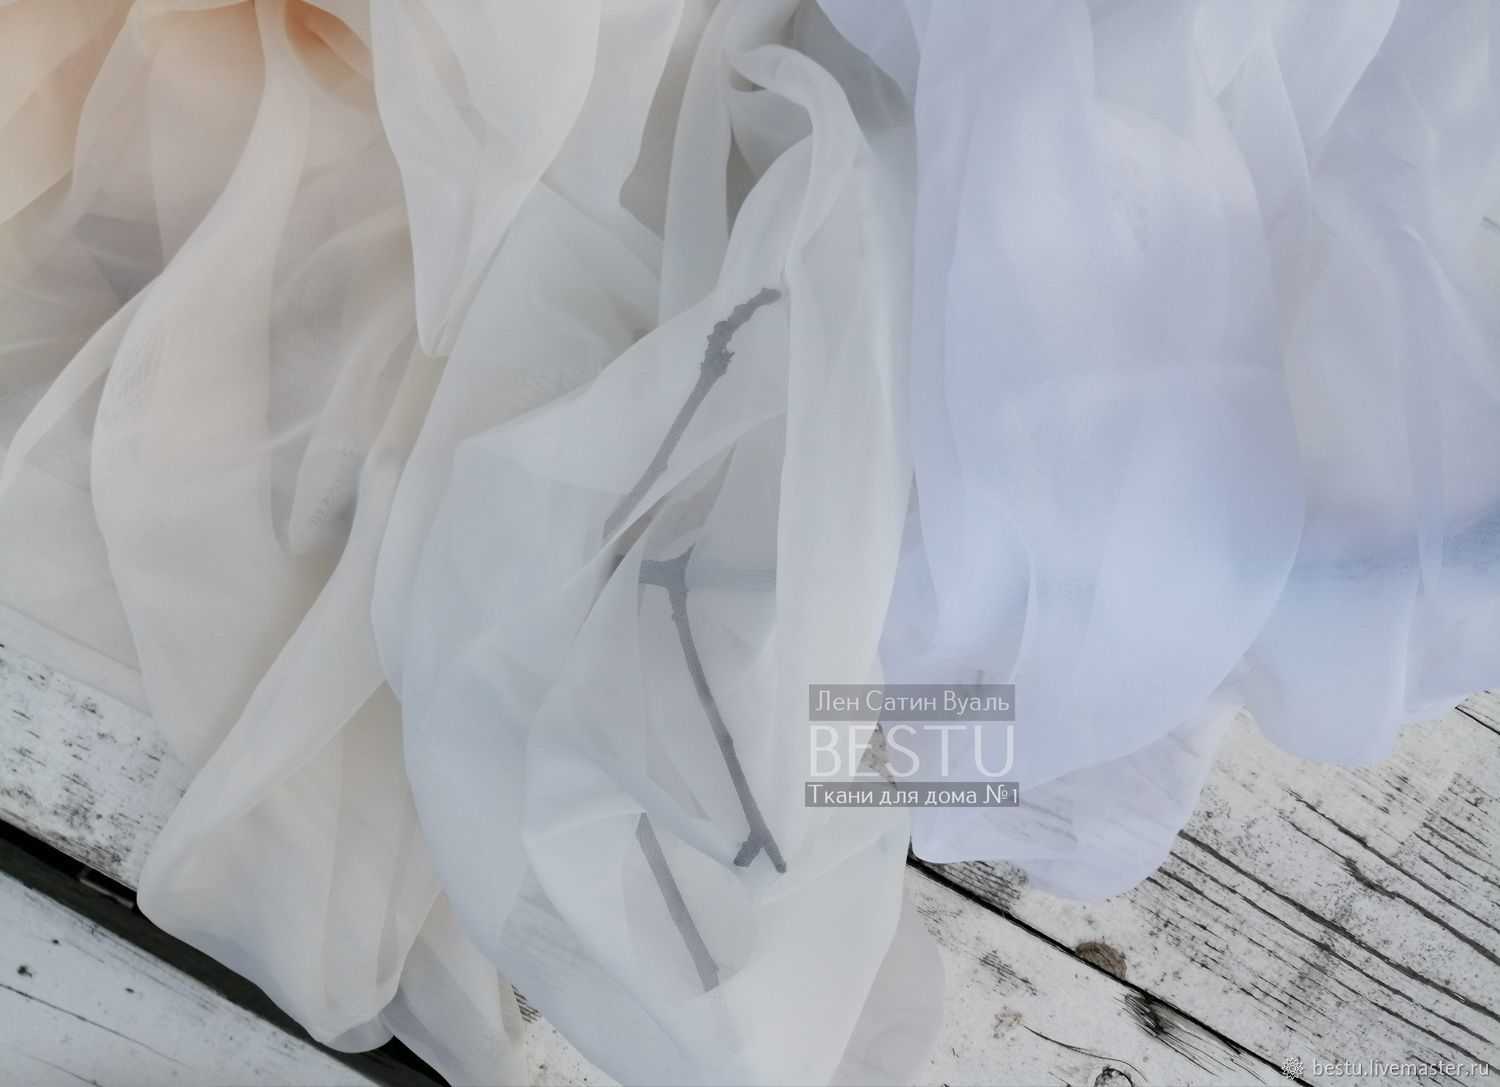 Как выбрать материал для штор: лучшие портьерные ткани для разных комнатматрасик — все о матрасах
как выбрать материал для штор: лучшие портьерные ткани для разных комнат